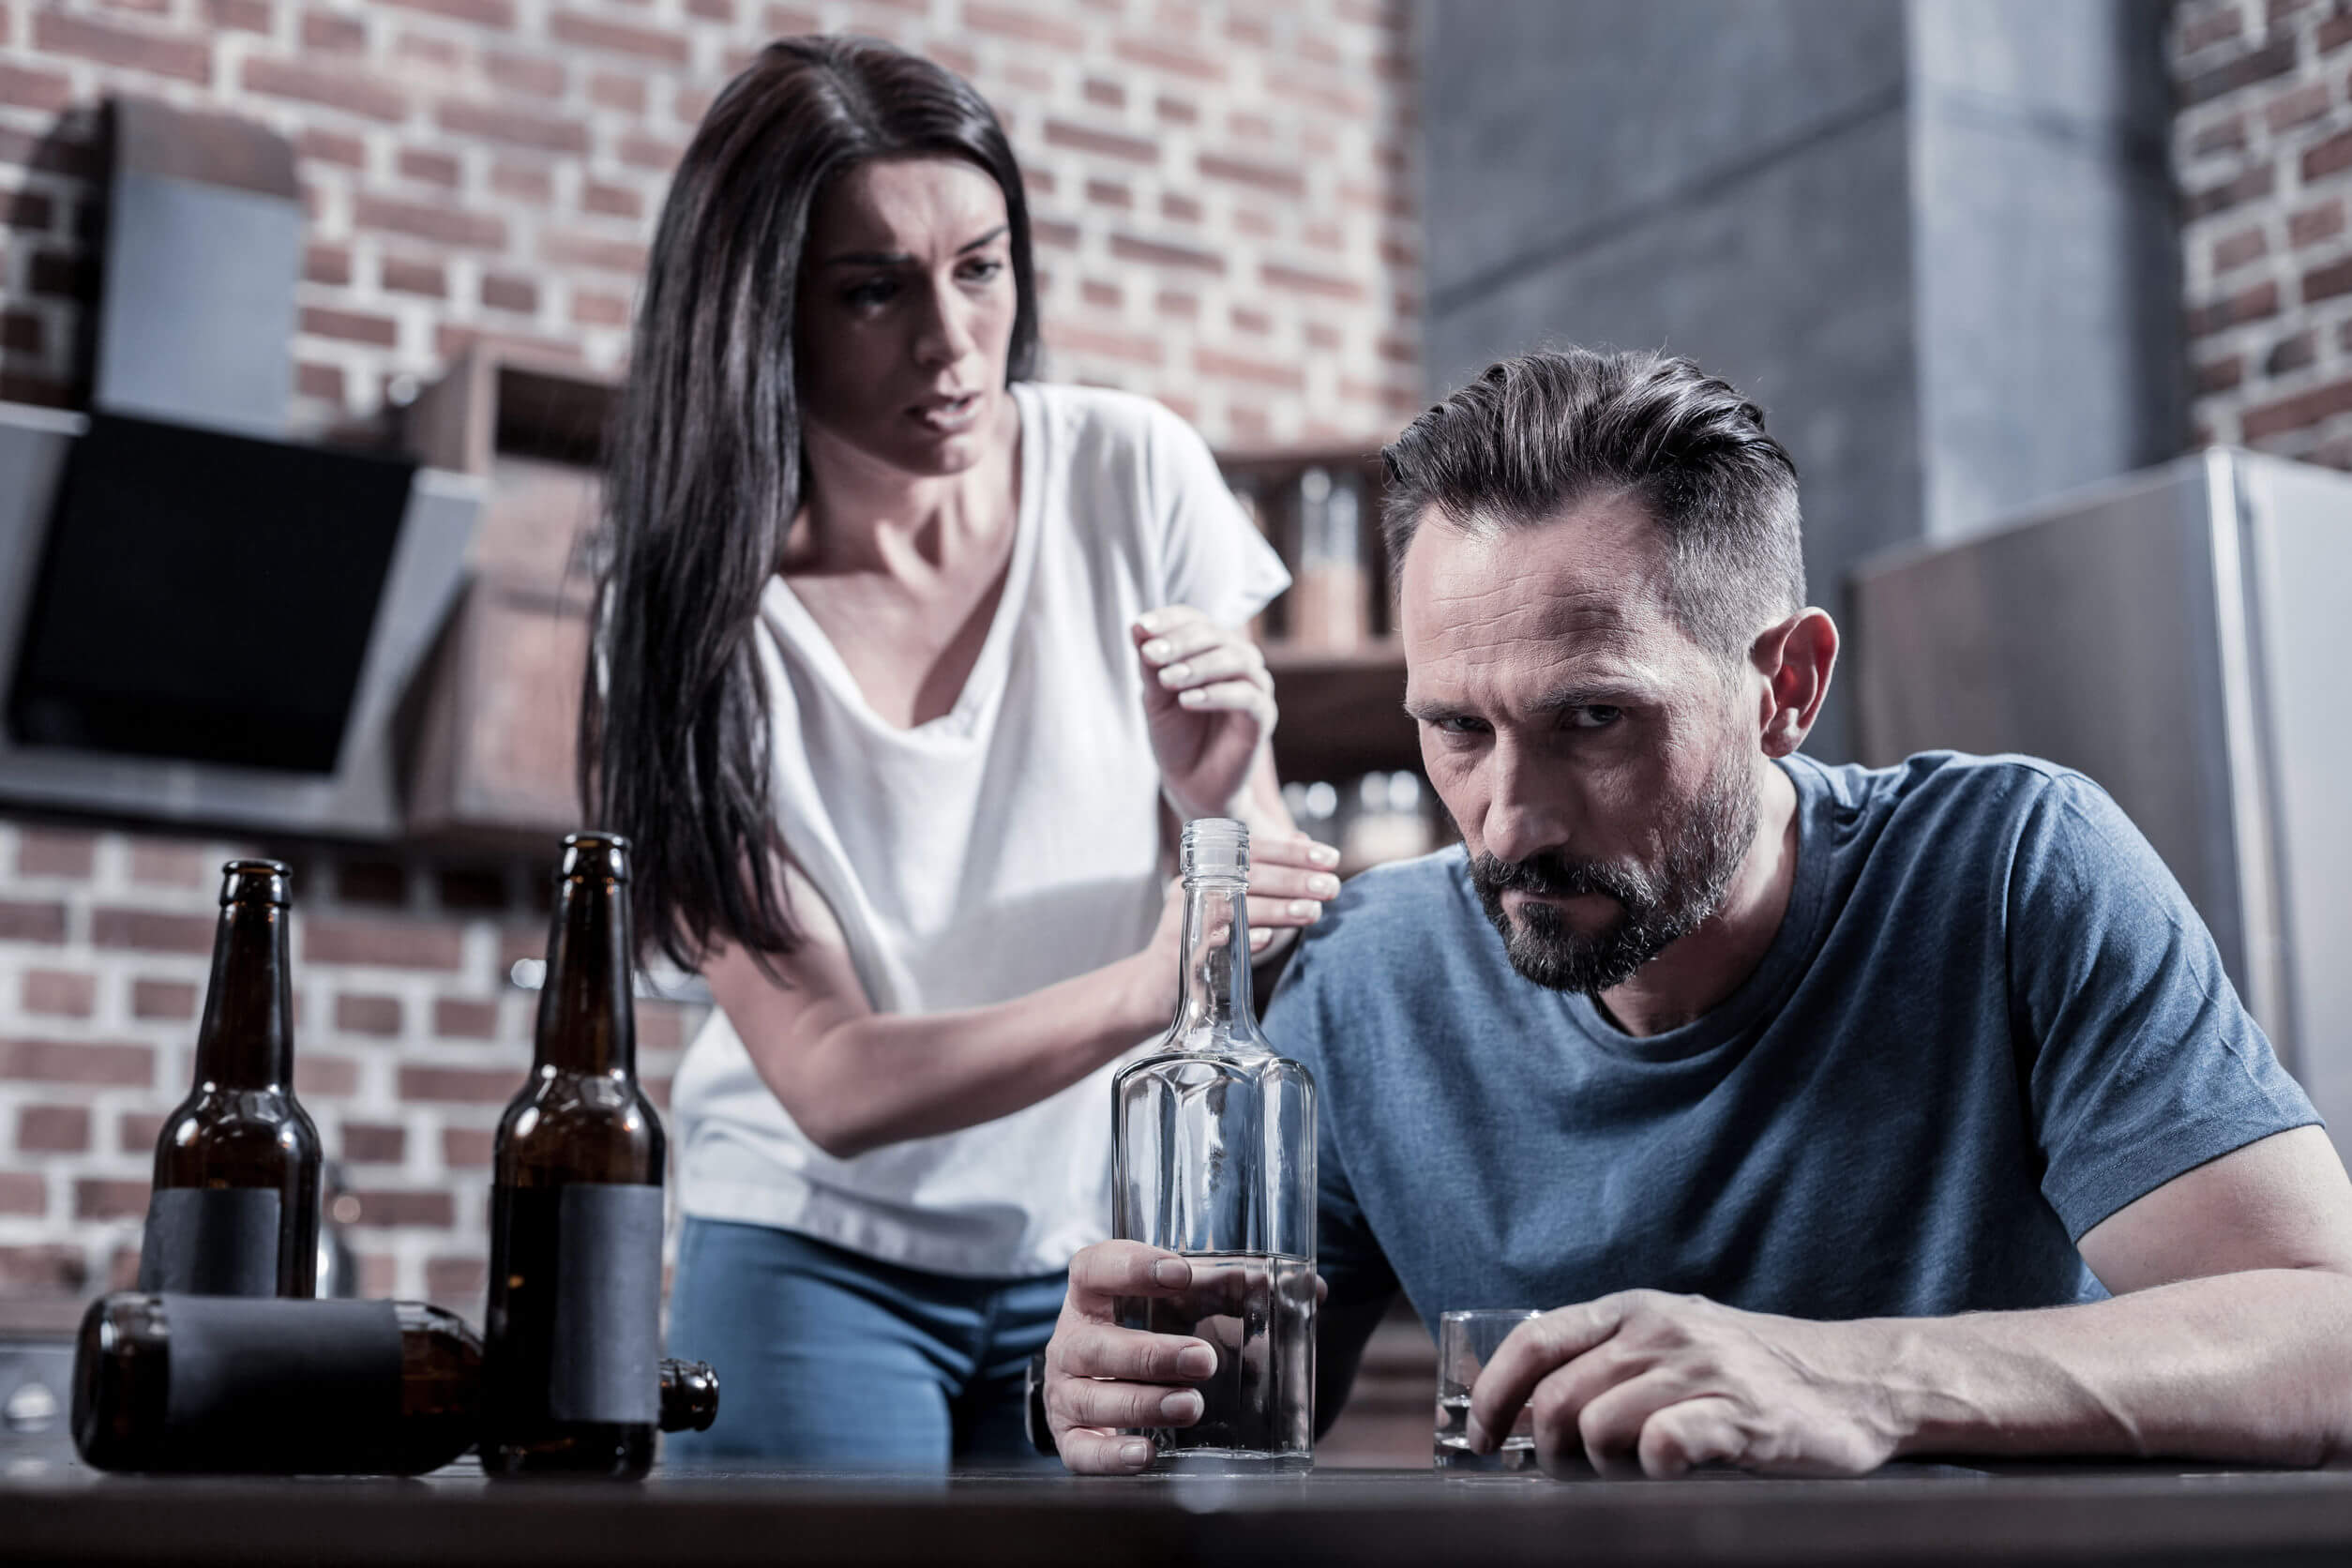 De effecten van alcohol op de hersenen kunnen samenlevensproblemen veroorzaken.